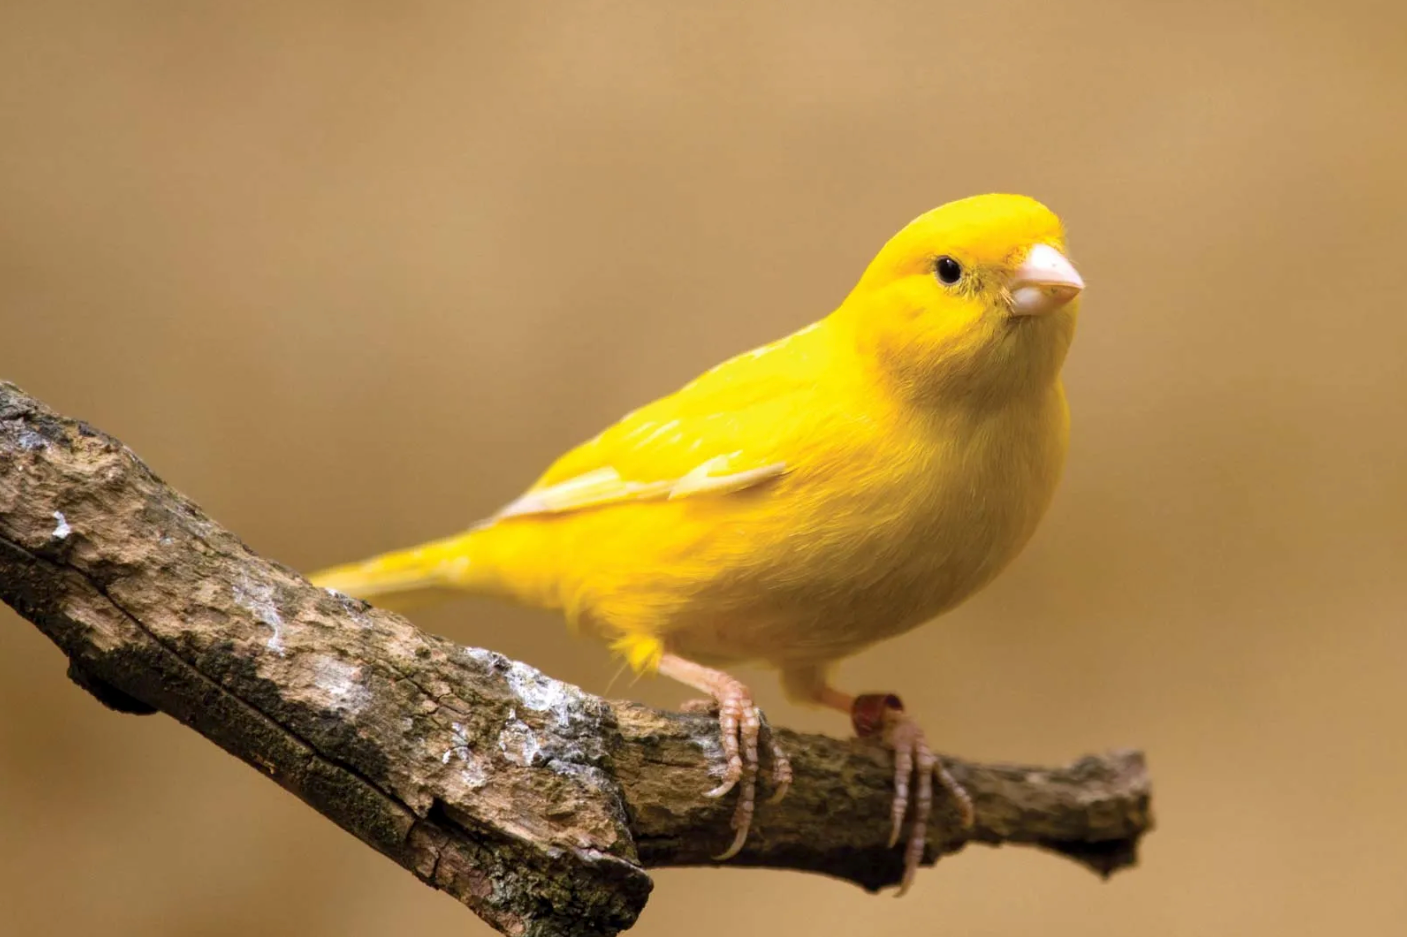 dalda duran sarı tüylü kuş